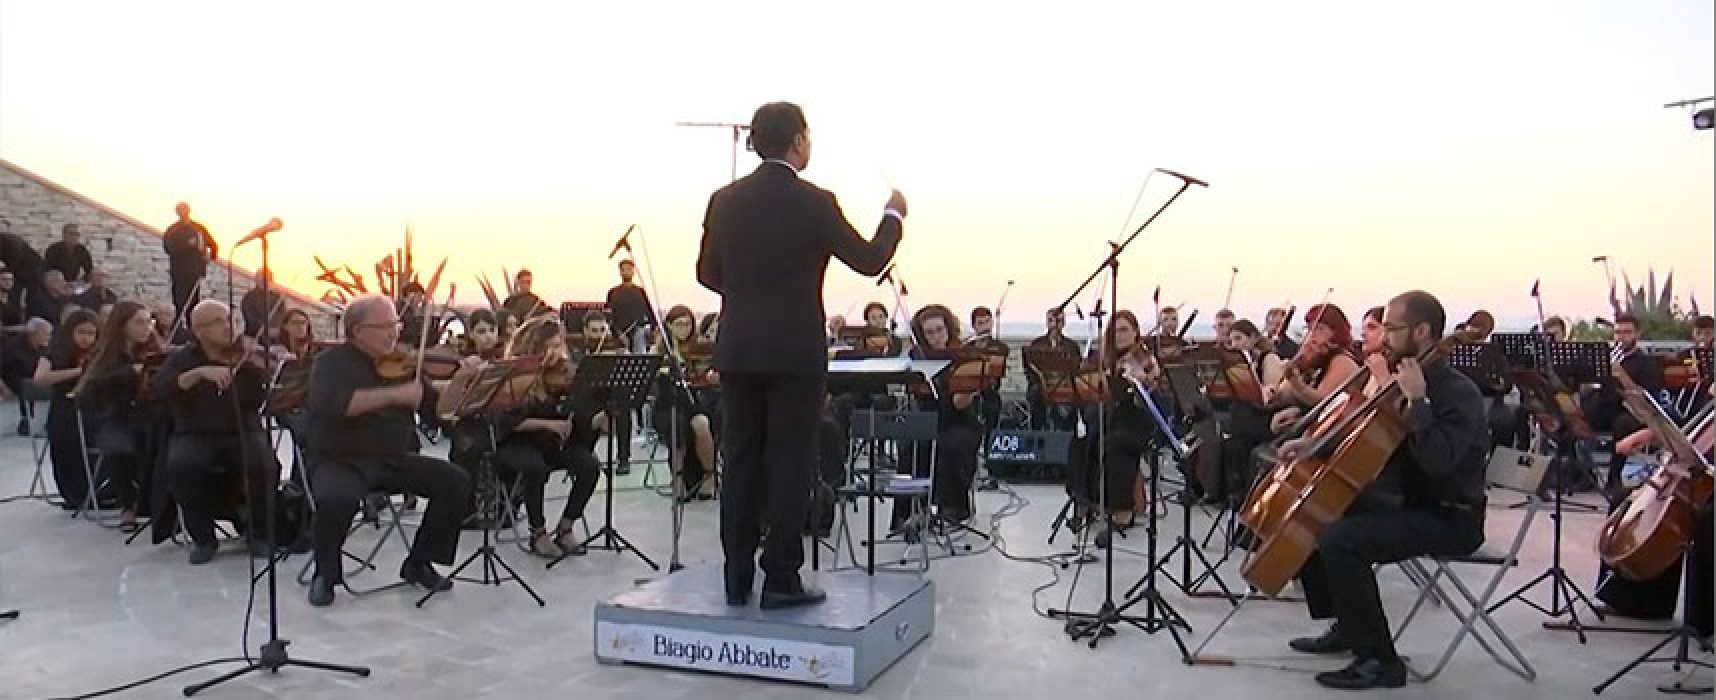 Orchestra Biagio Abbate: grandi nomi della musica nel palinsesto degli eventi estivi